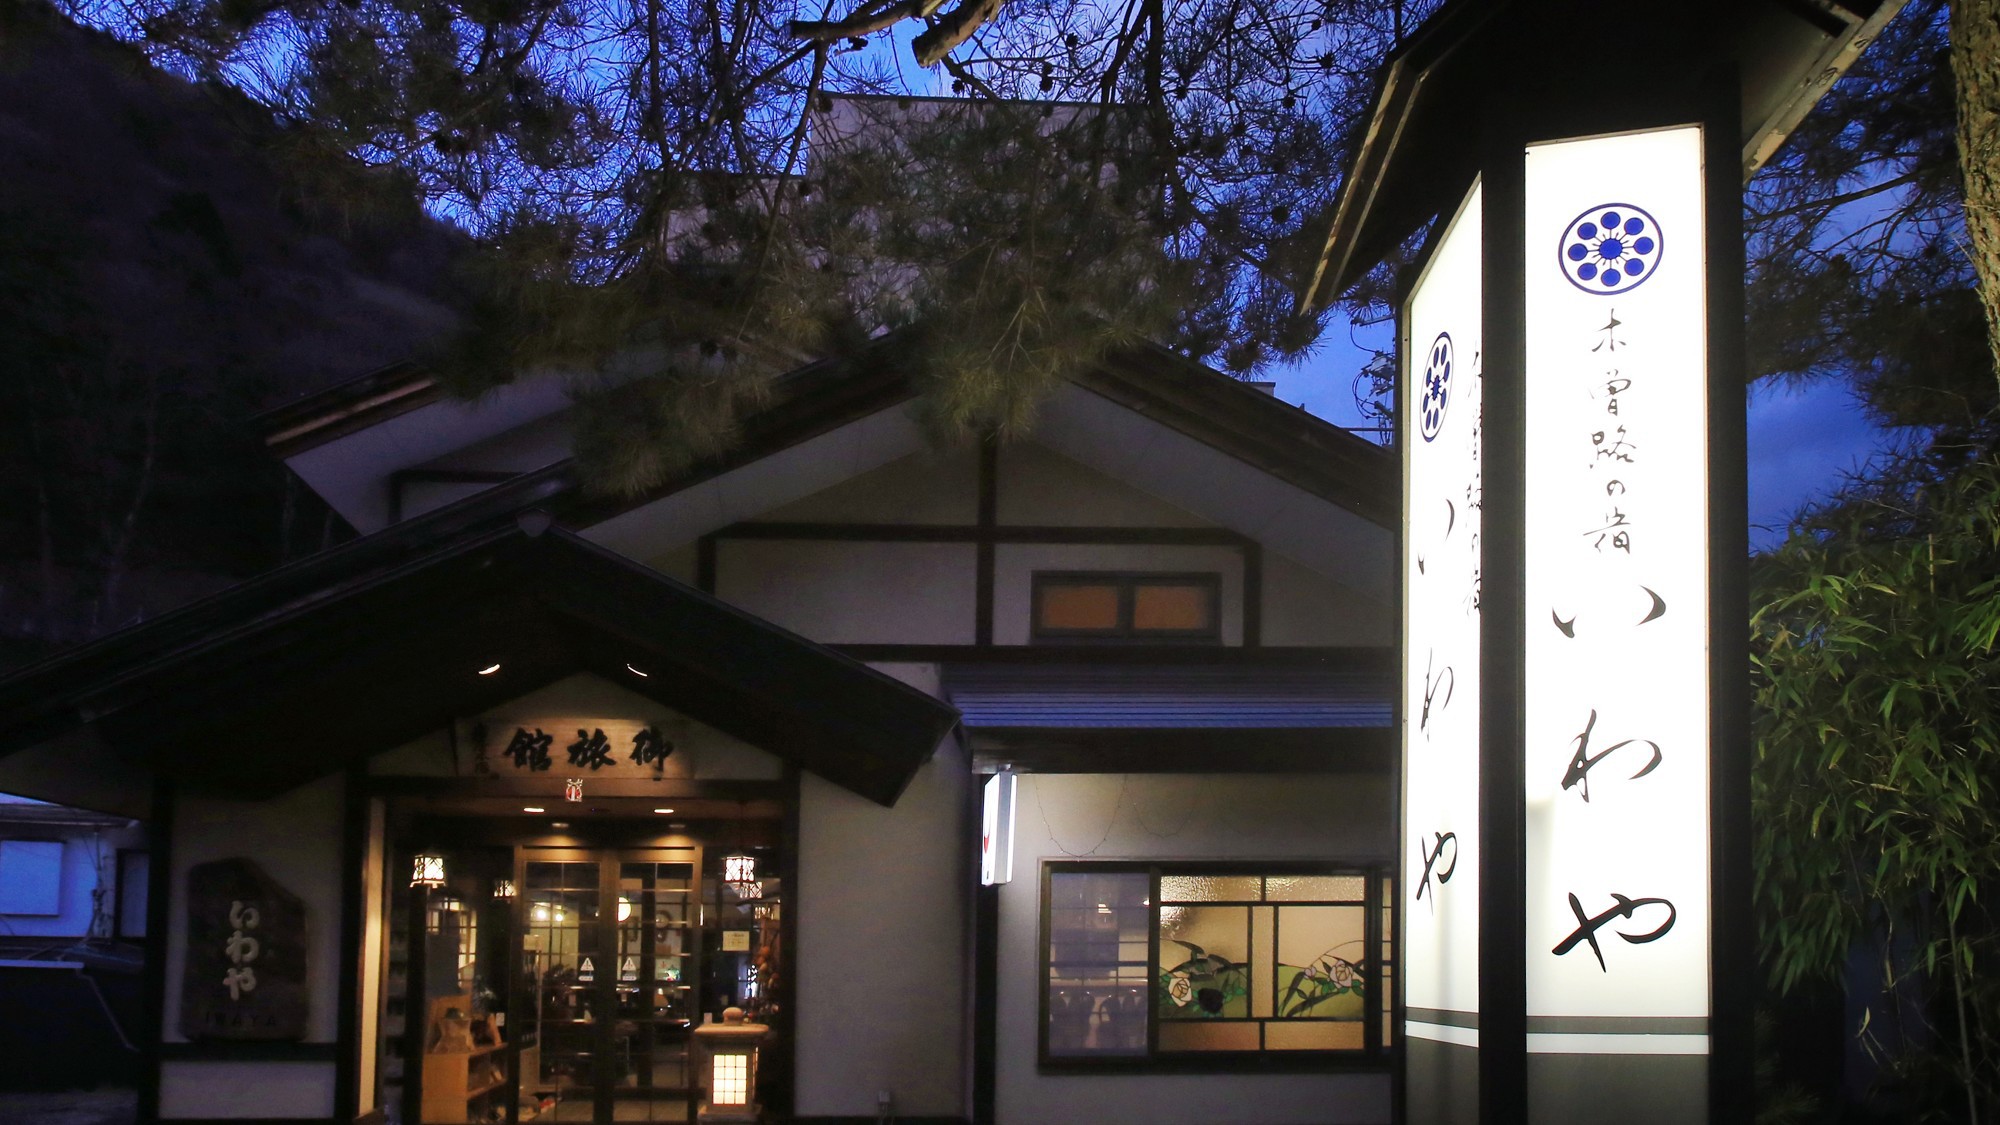 木曽路の宿 いわやは、中山道37番目の宿場町「福島宿」の中心部にございます。